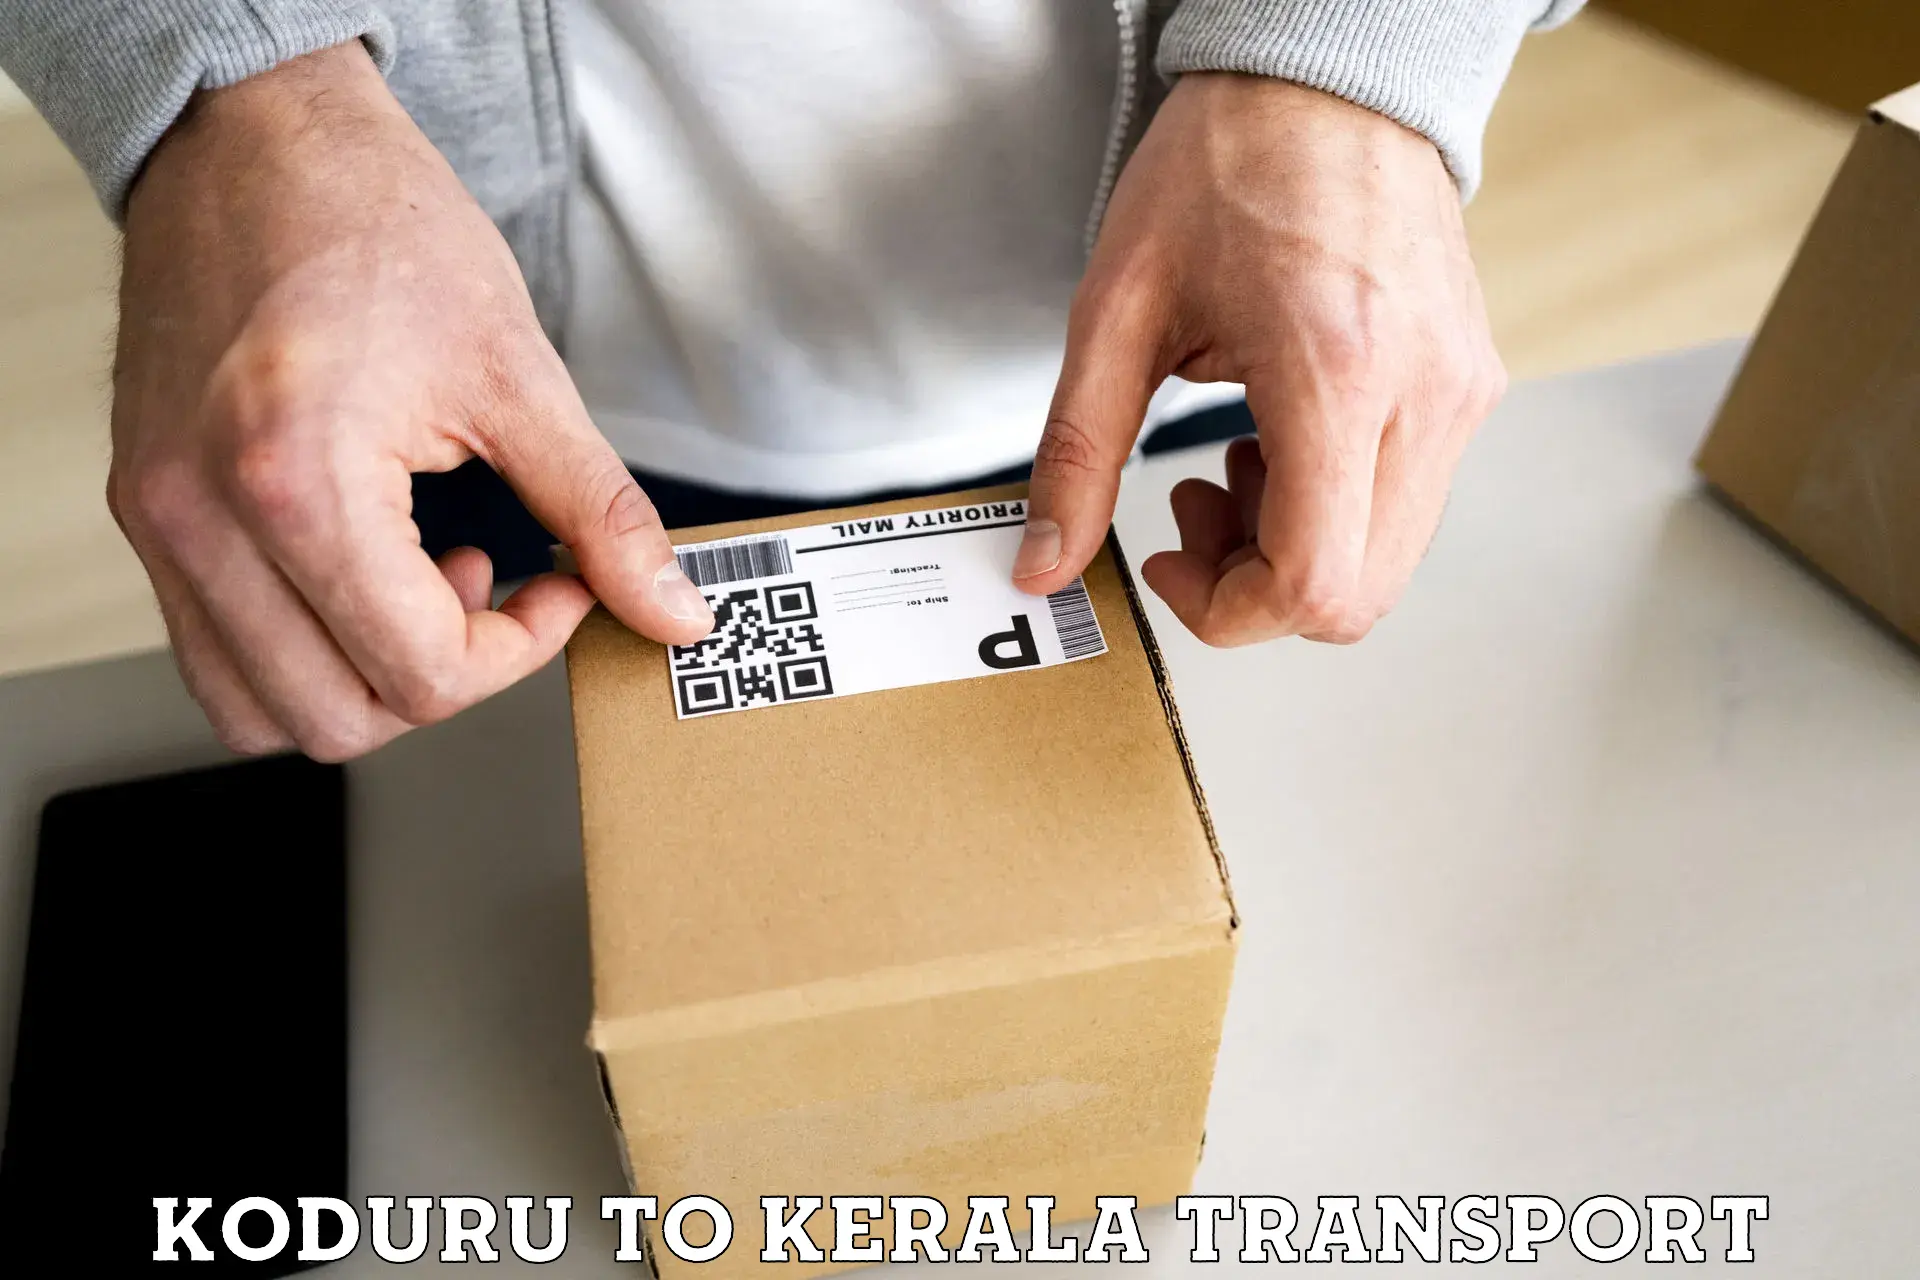 Delivery service Koduru to Kalanjoor